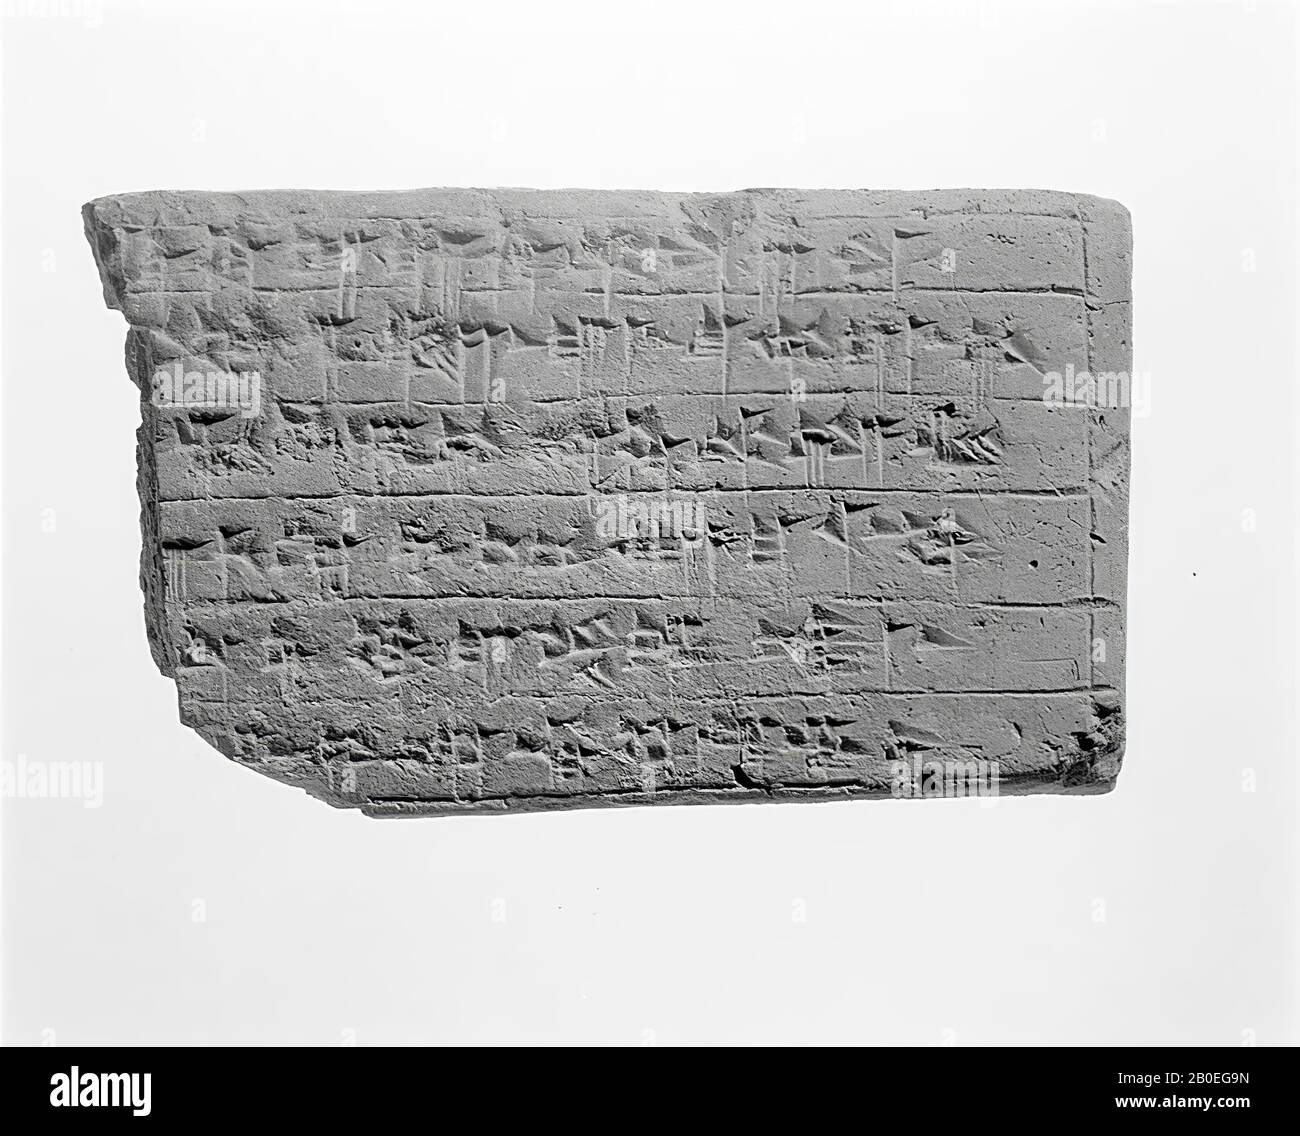 Élément de construction, inscription, poterie, L 17,1 cm, W 10,5 cm, H 3 cm, période d'élamite moyenne 1340-1330 av. J.-C., Iran Banque D'Images